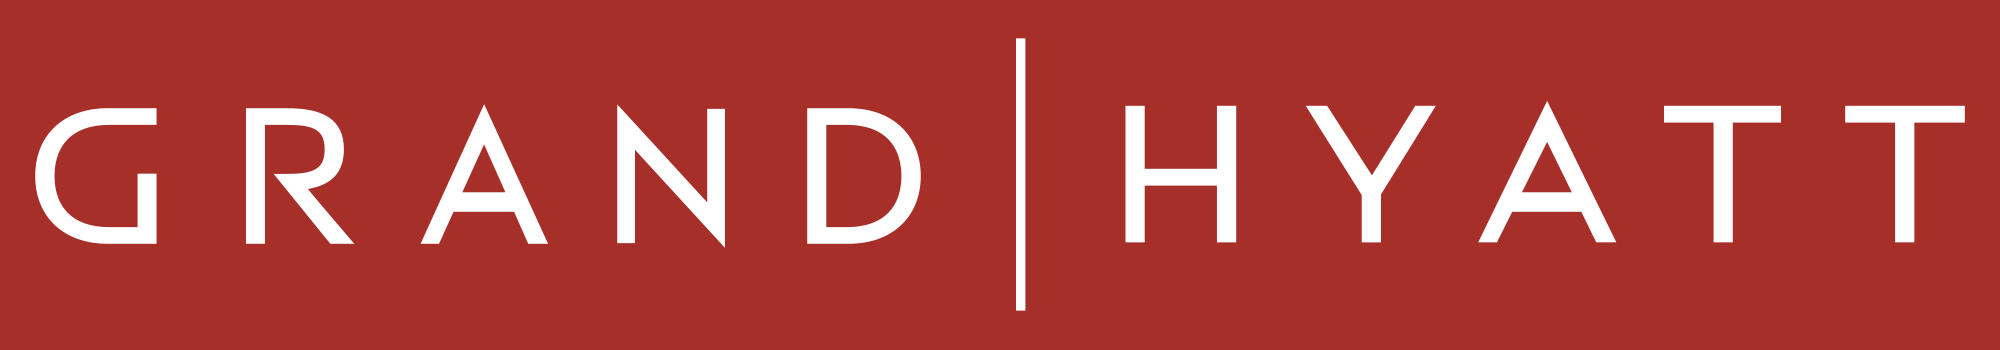 Hyatt Logo - File:Grand Hyatt logo.svg - Wikimedia Commons